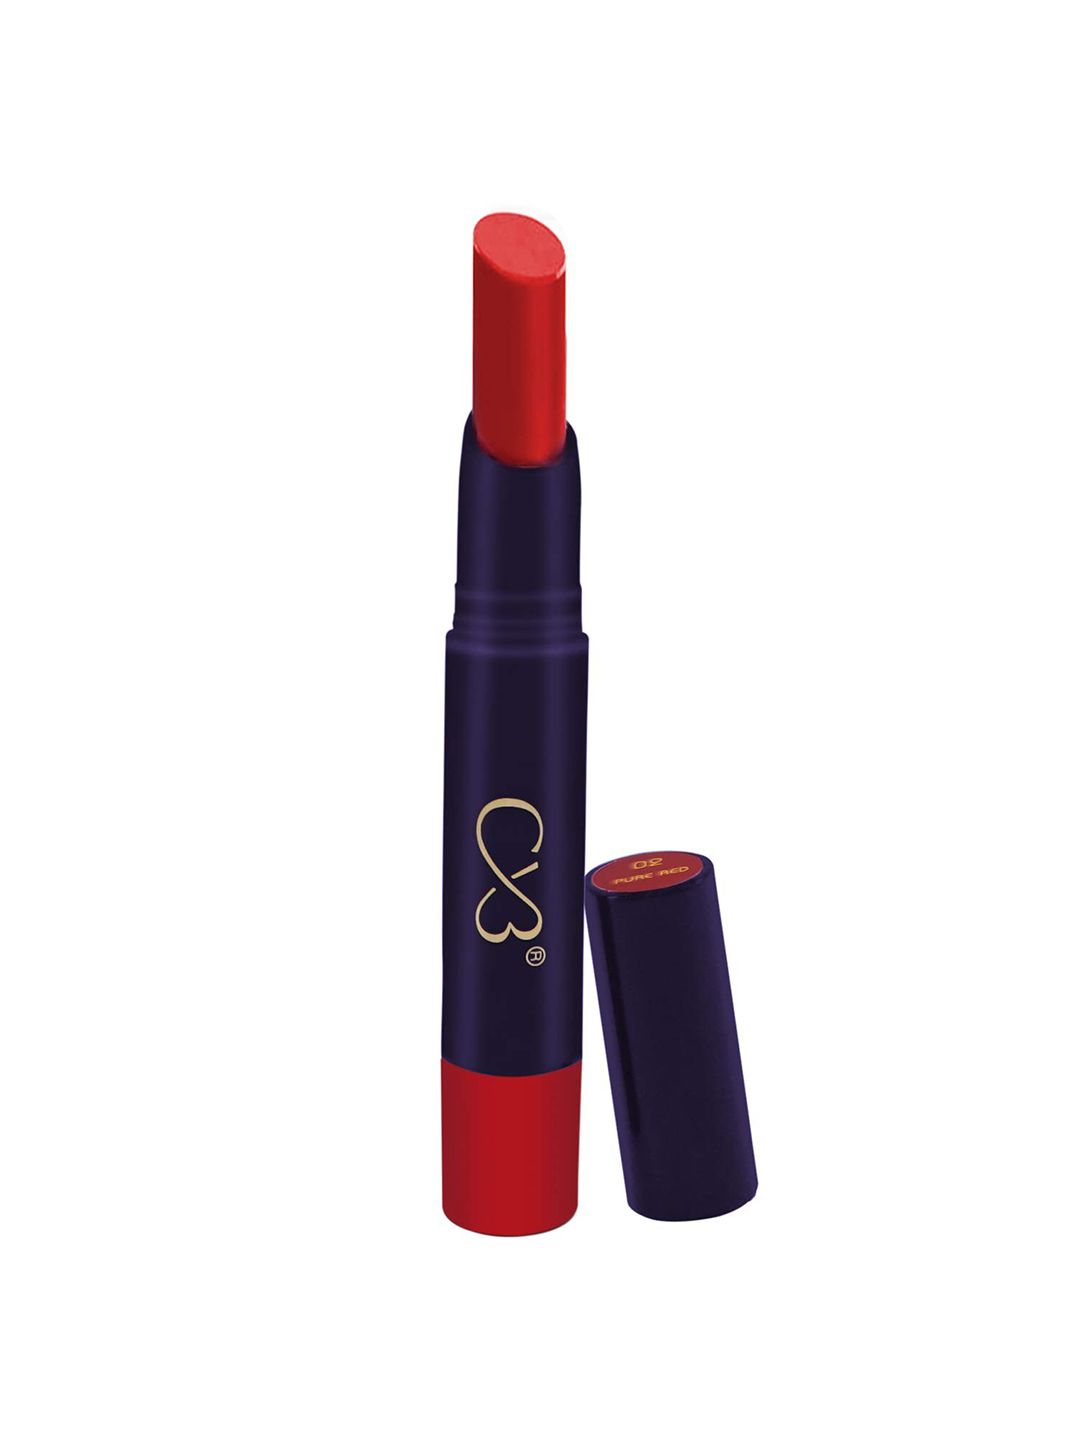 CVB Lip Lock No Transfer Lipstick 3.8 g - Pure Red 02 Price in India